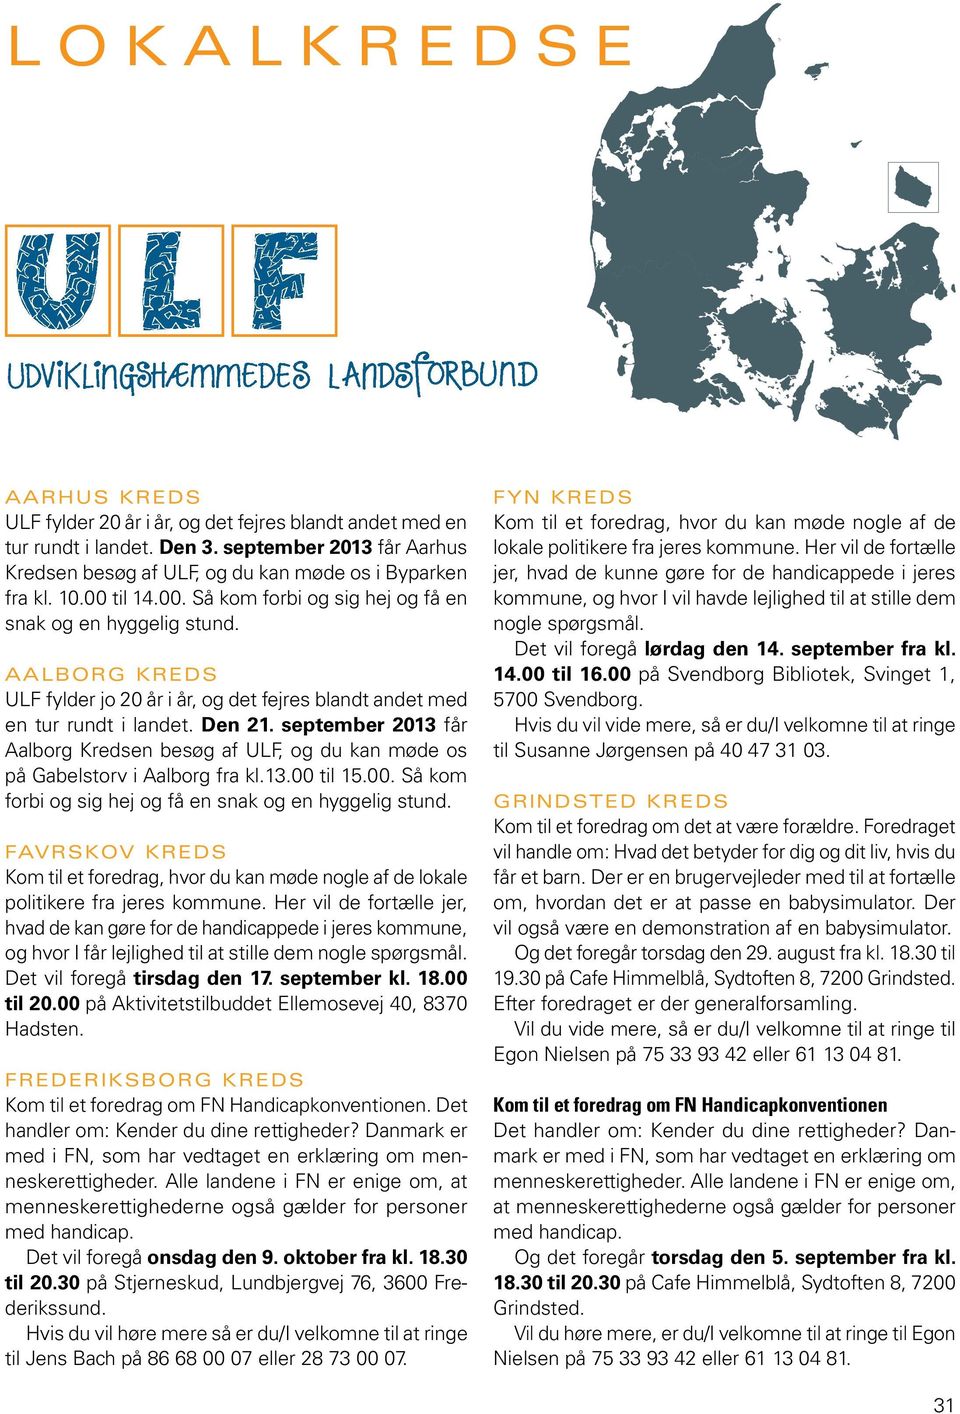 september 2013 får Aalborg Kredsen besøg af ULF, og du kan møde os på Gabelstorv i Aalborg fra kl.13.00 til 15.00. Så kom forbi og sig hej og få en snak og en hyggelig stund.